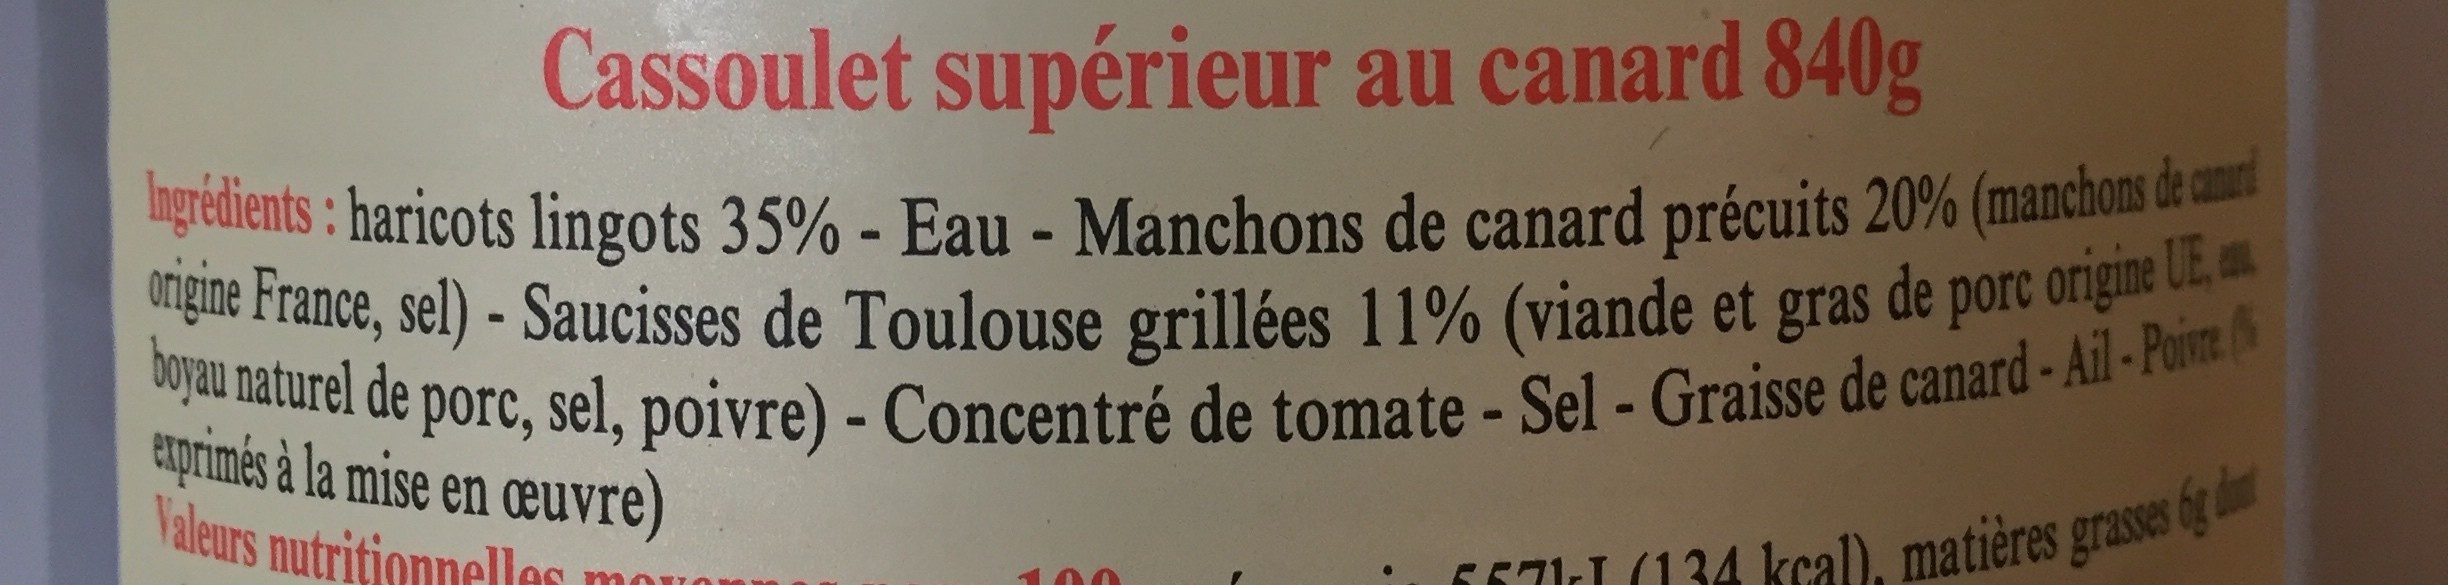 Cassoulet au canard - Ingrédients